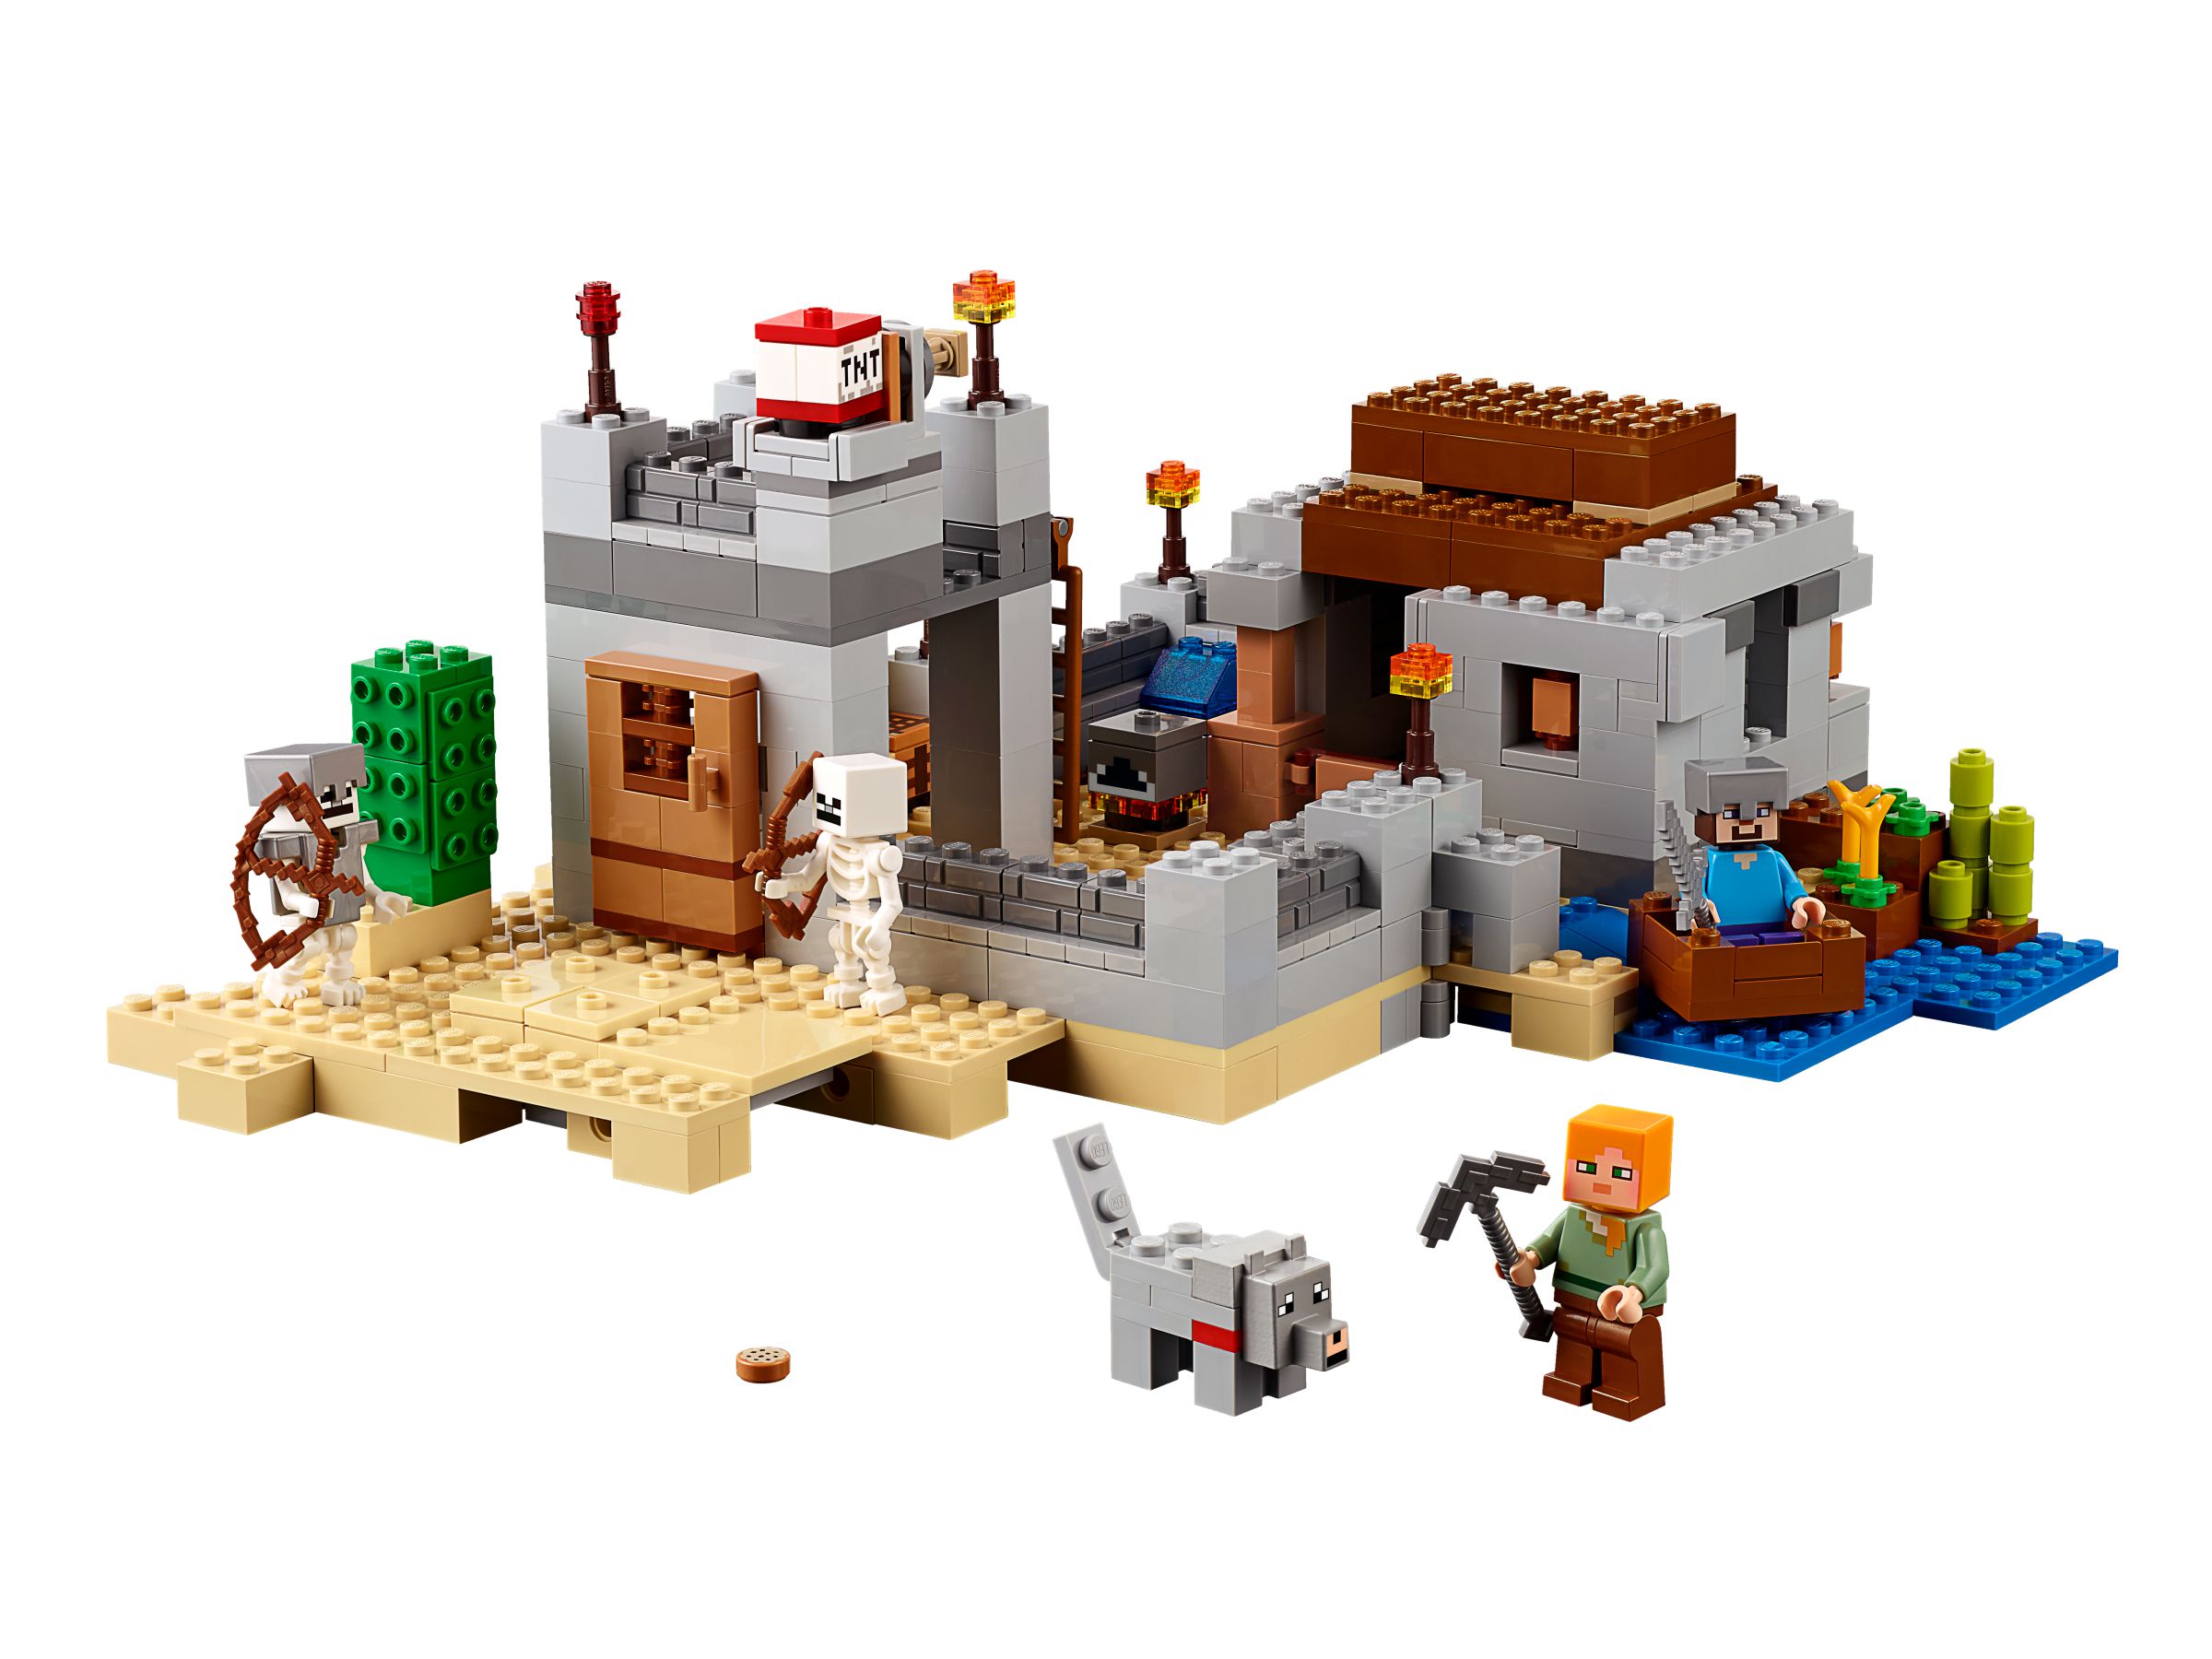 LEGO Minecraft Der Wüstenaußenposten 21121